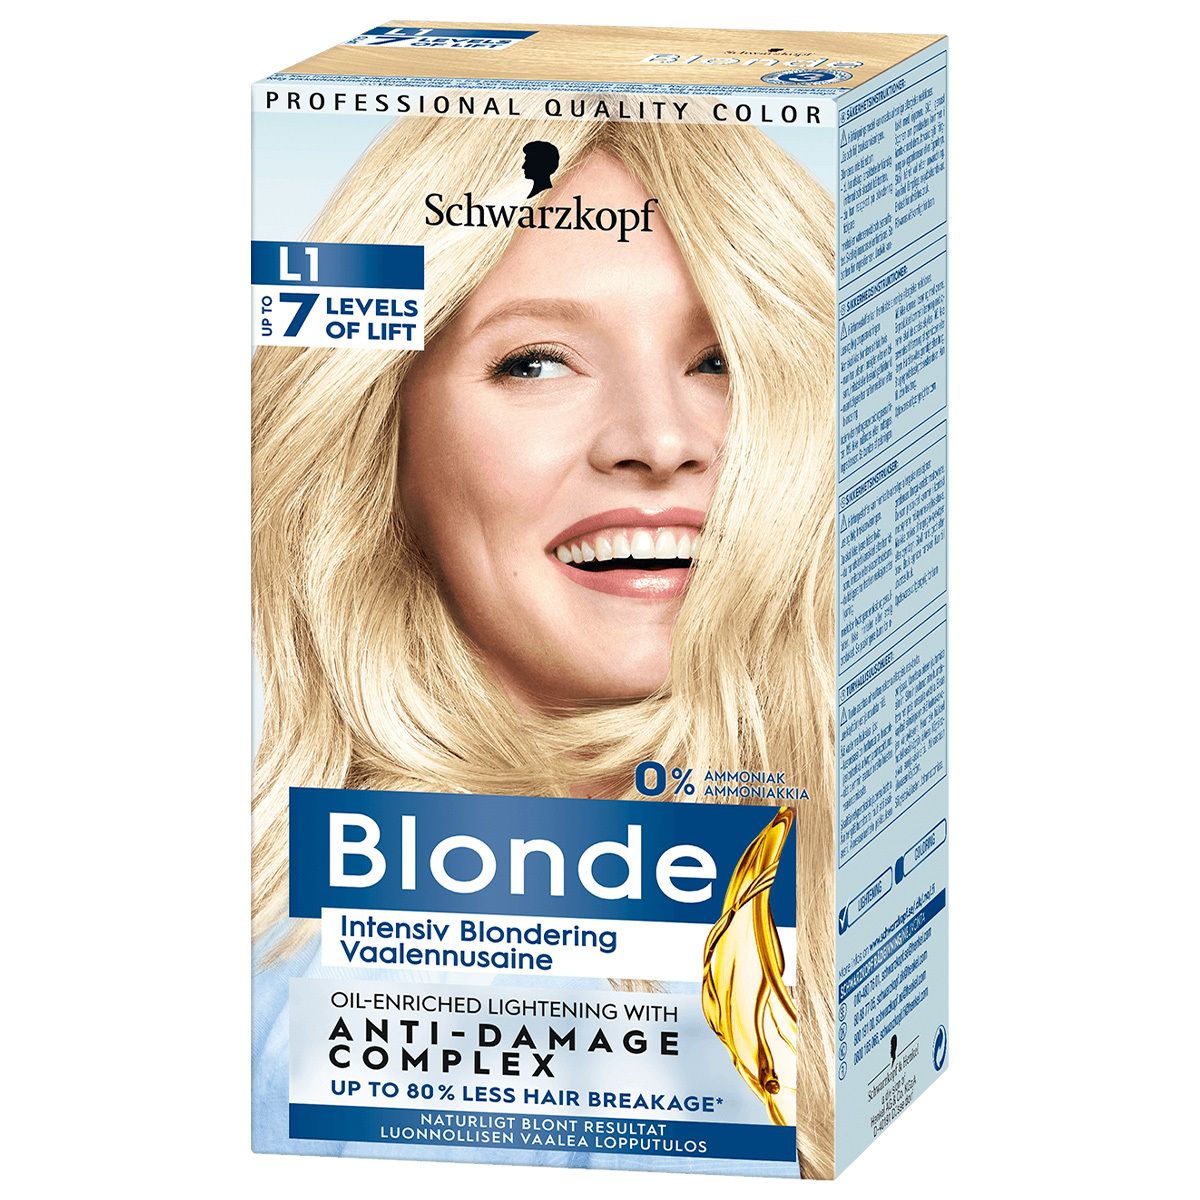 Køb Schwarzkopf Blonde Intensiv Blondering hos